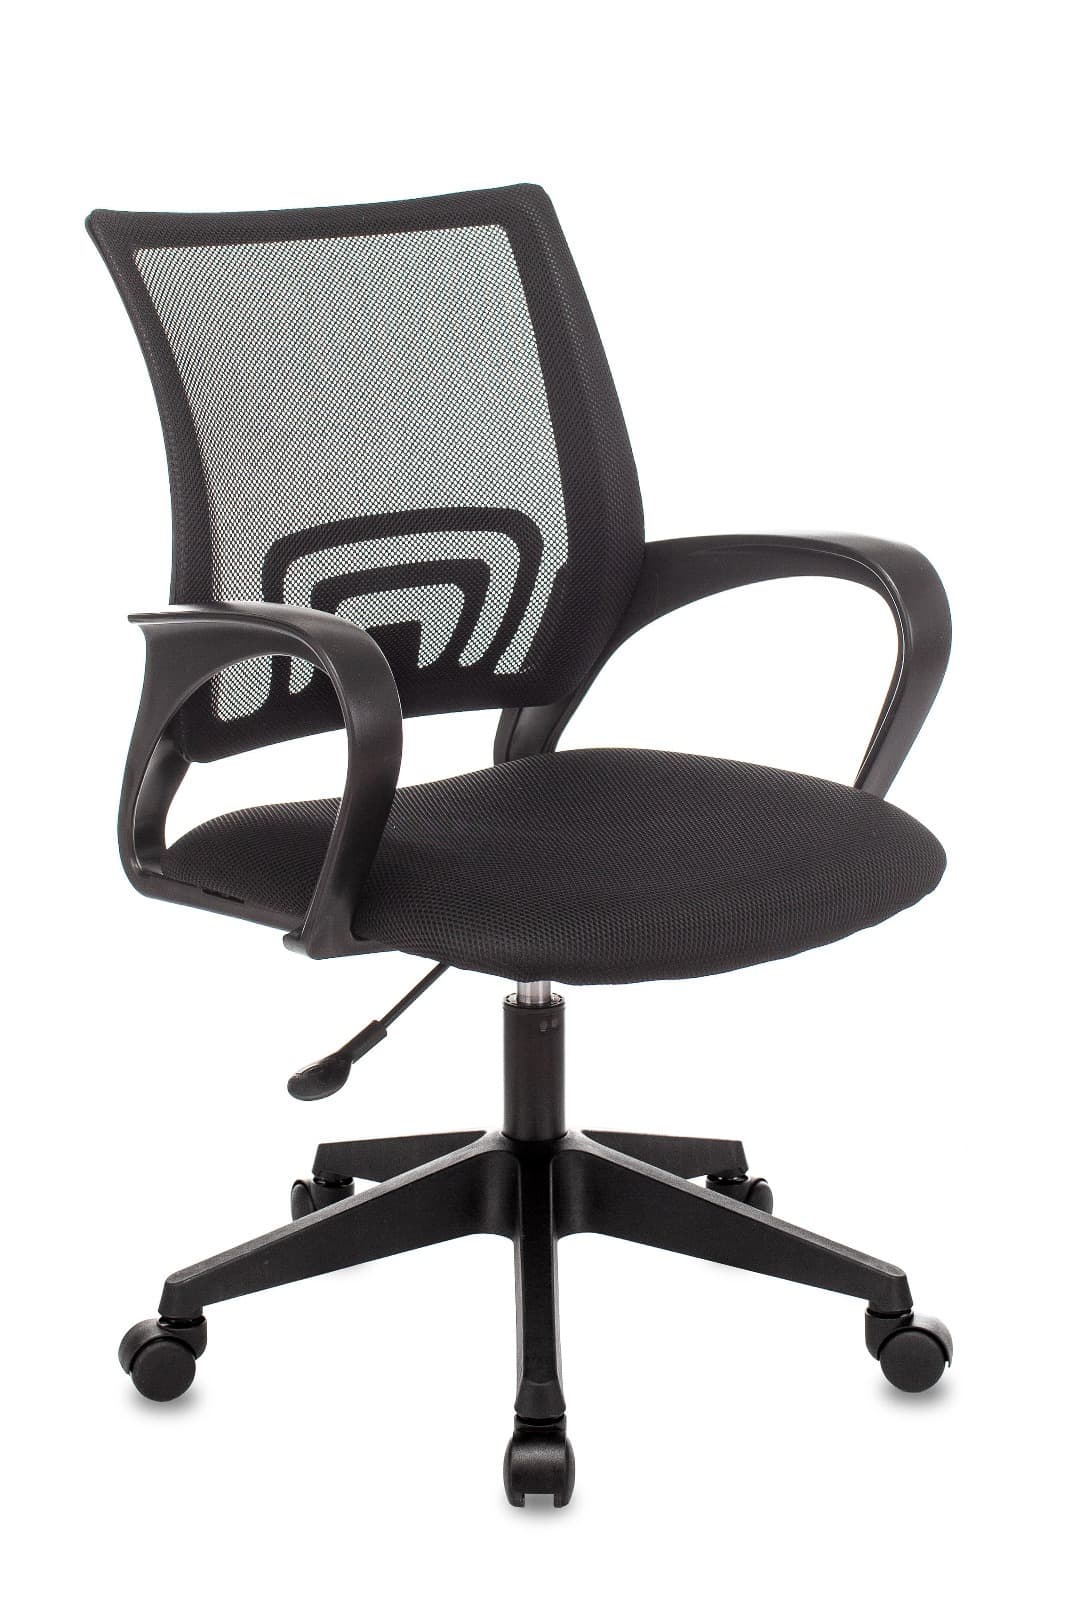 Компьютерное кресло ST-Basic офисное сетка/ткань черный крестовина пластик механизм Пиастра